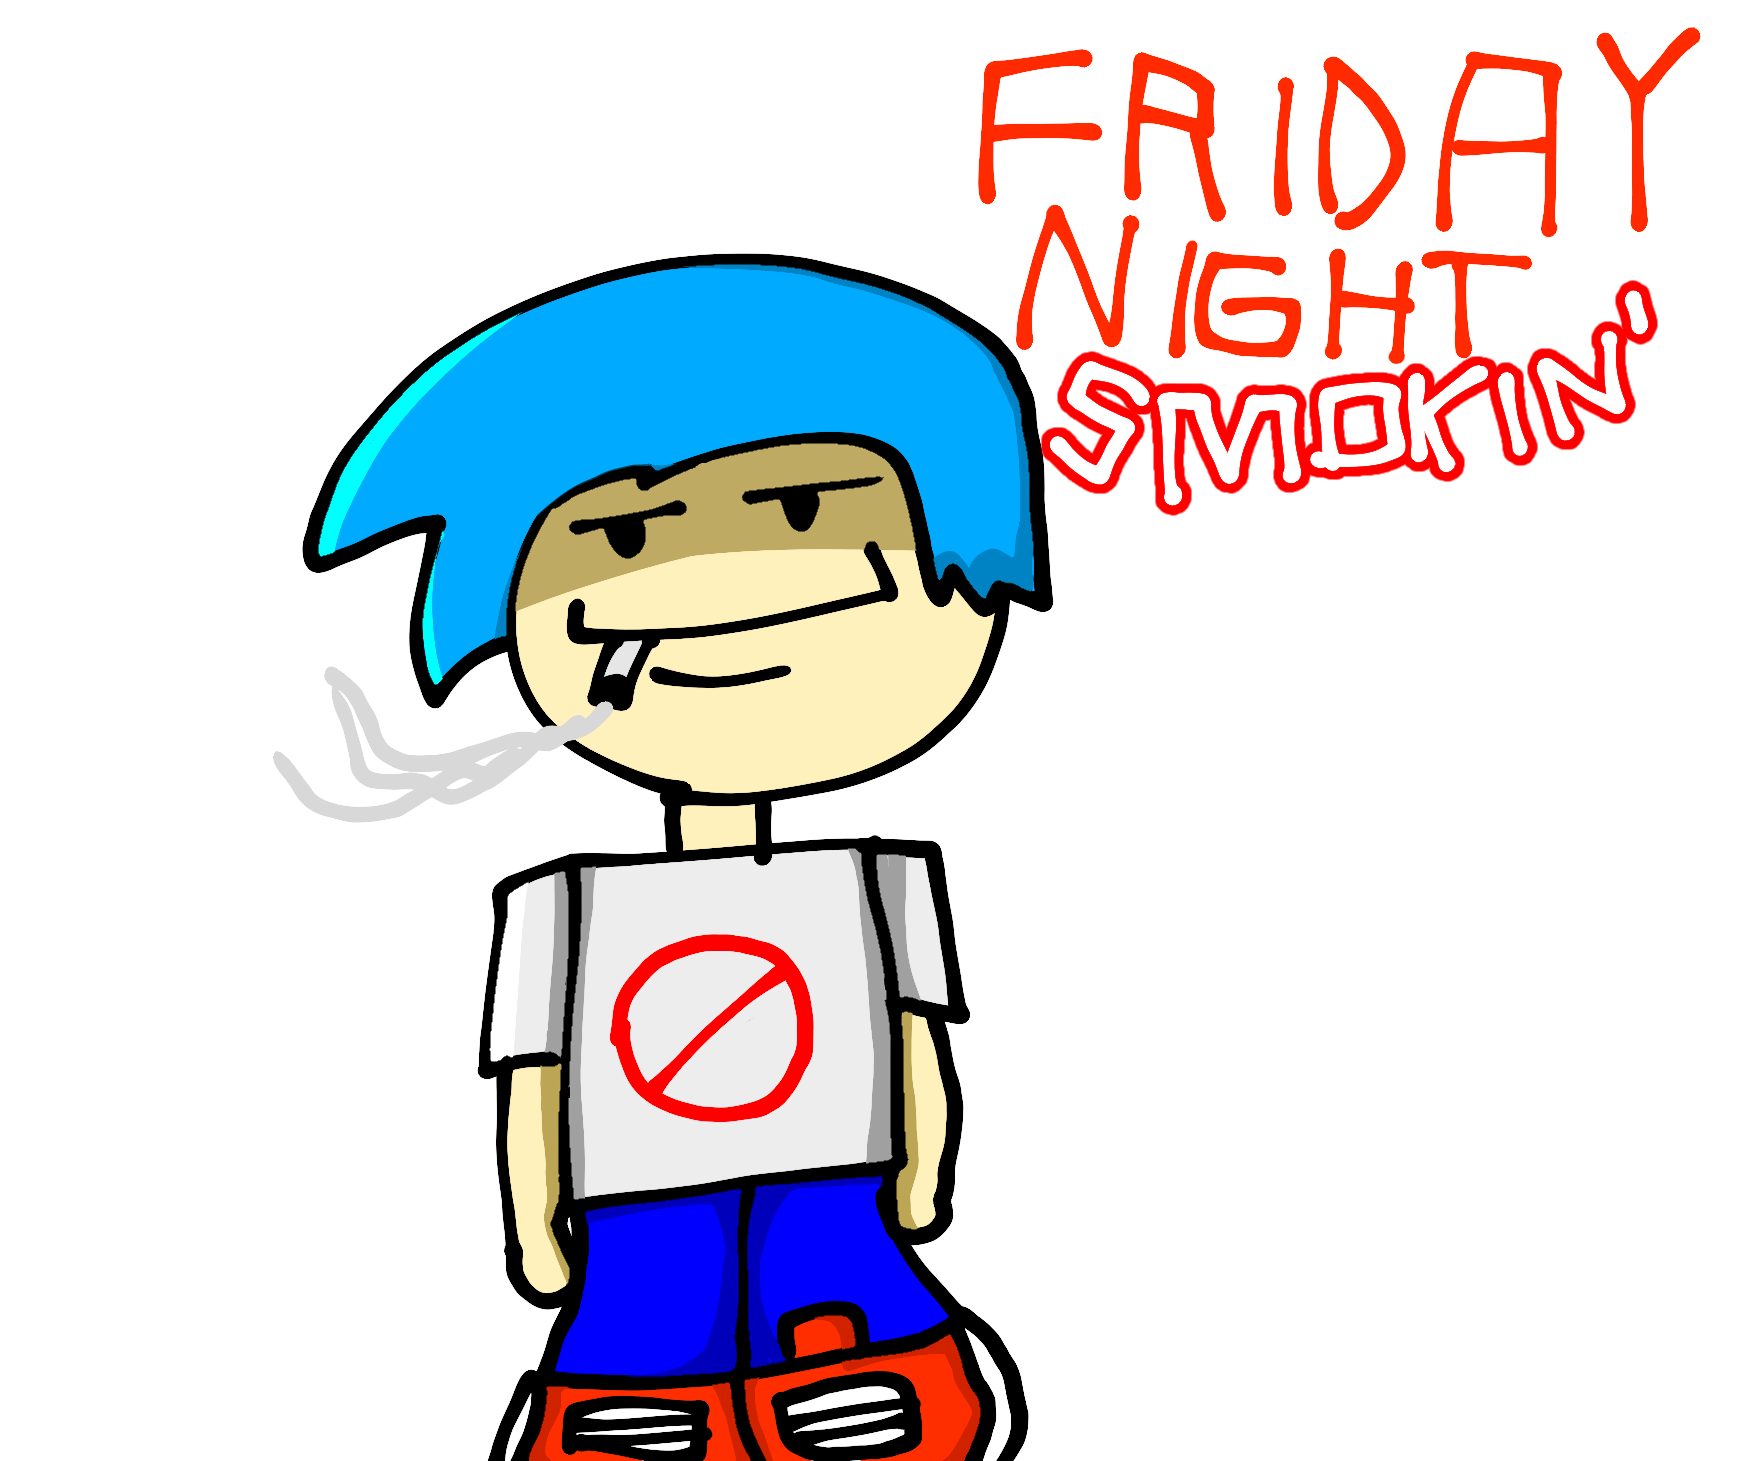 Friday night smokin' Blank Meme Template